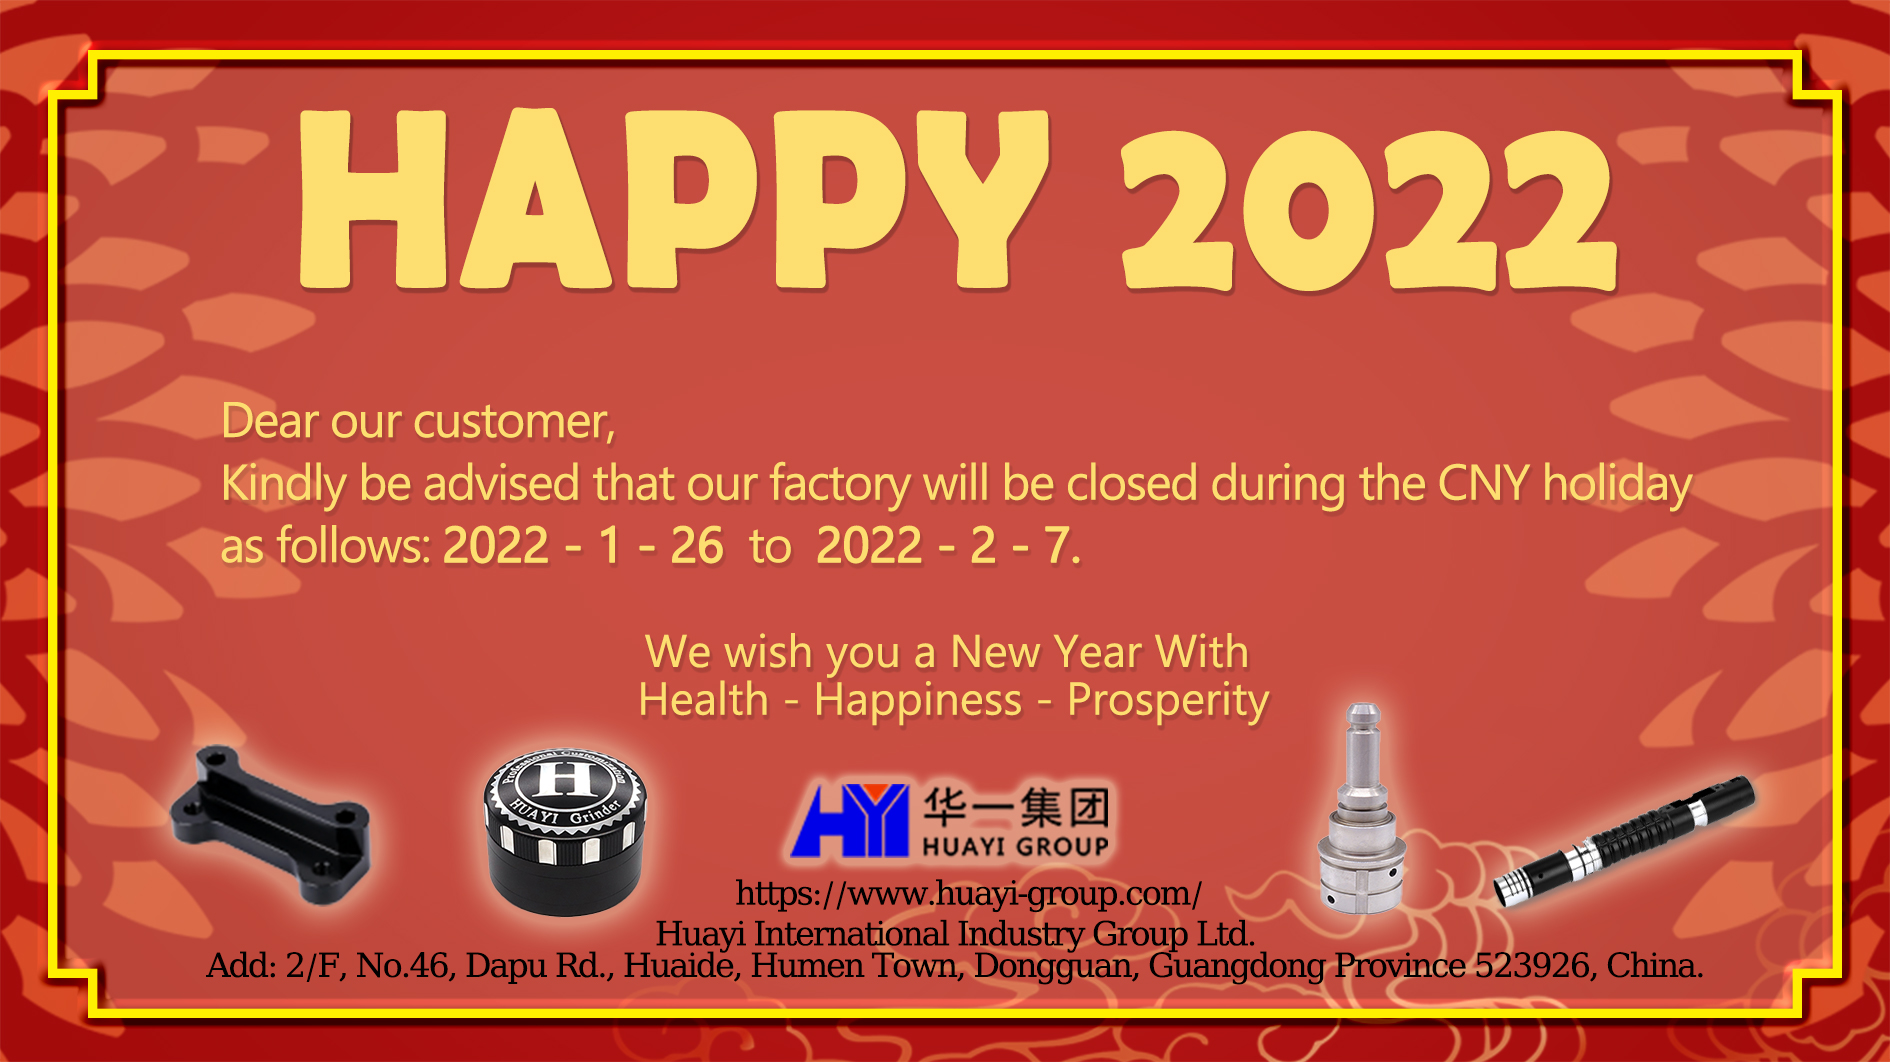 Aviso de feriado do ano novo chinês de 2022